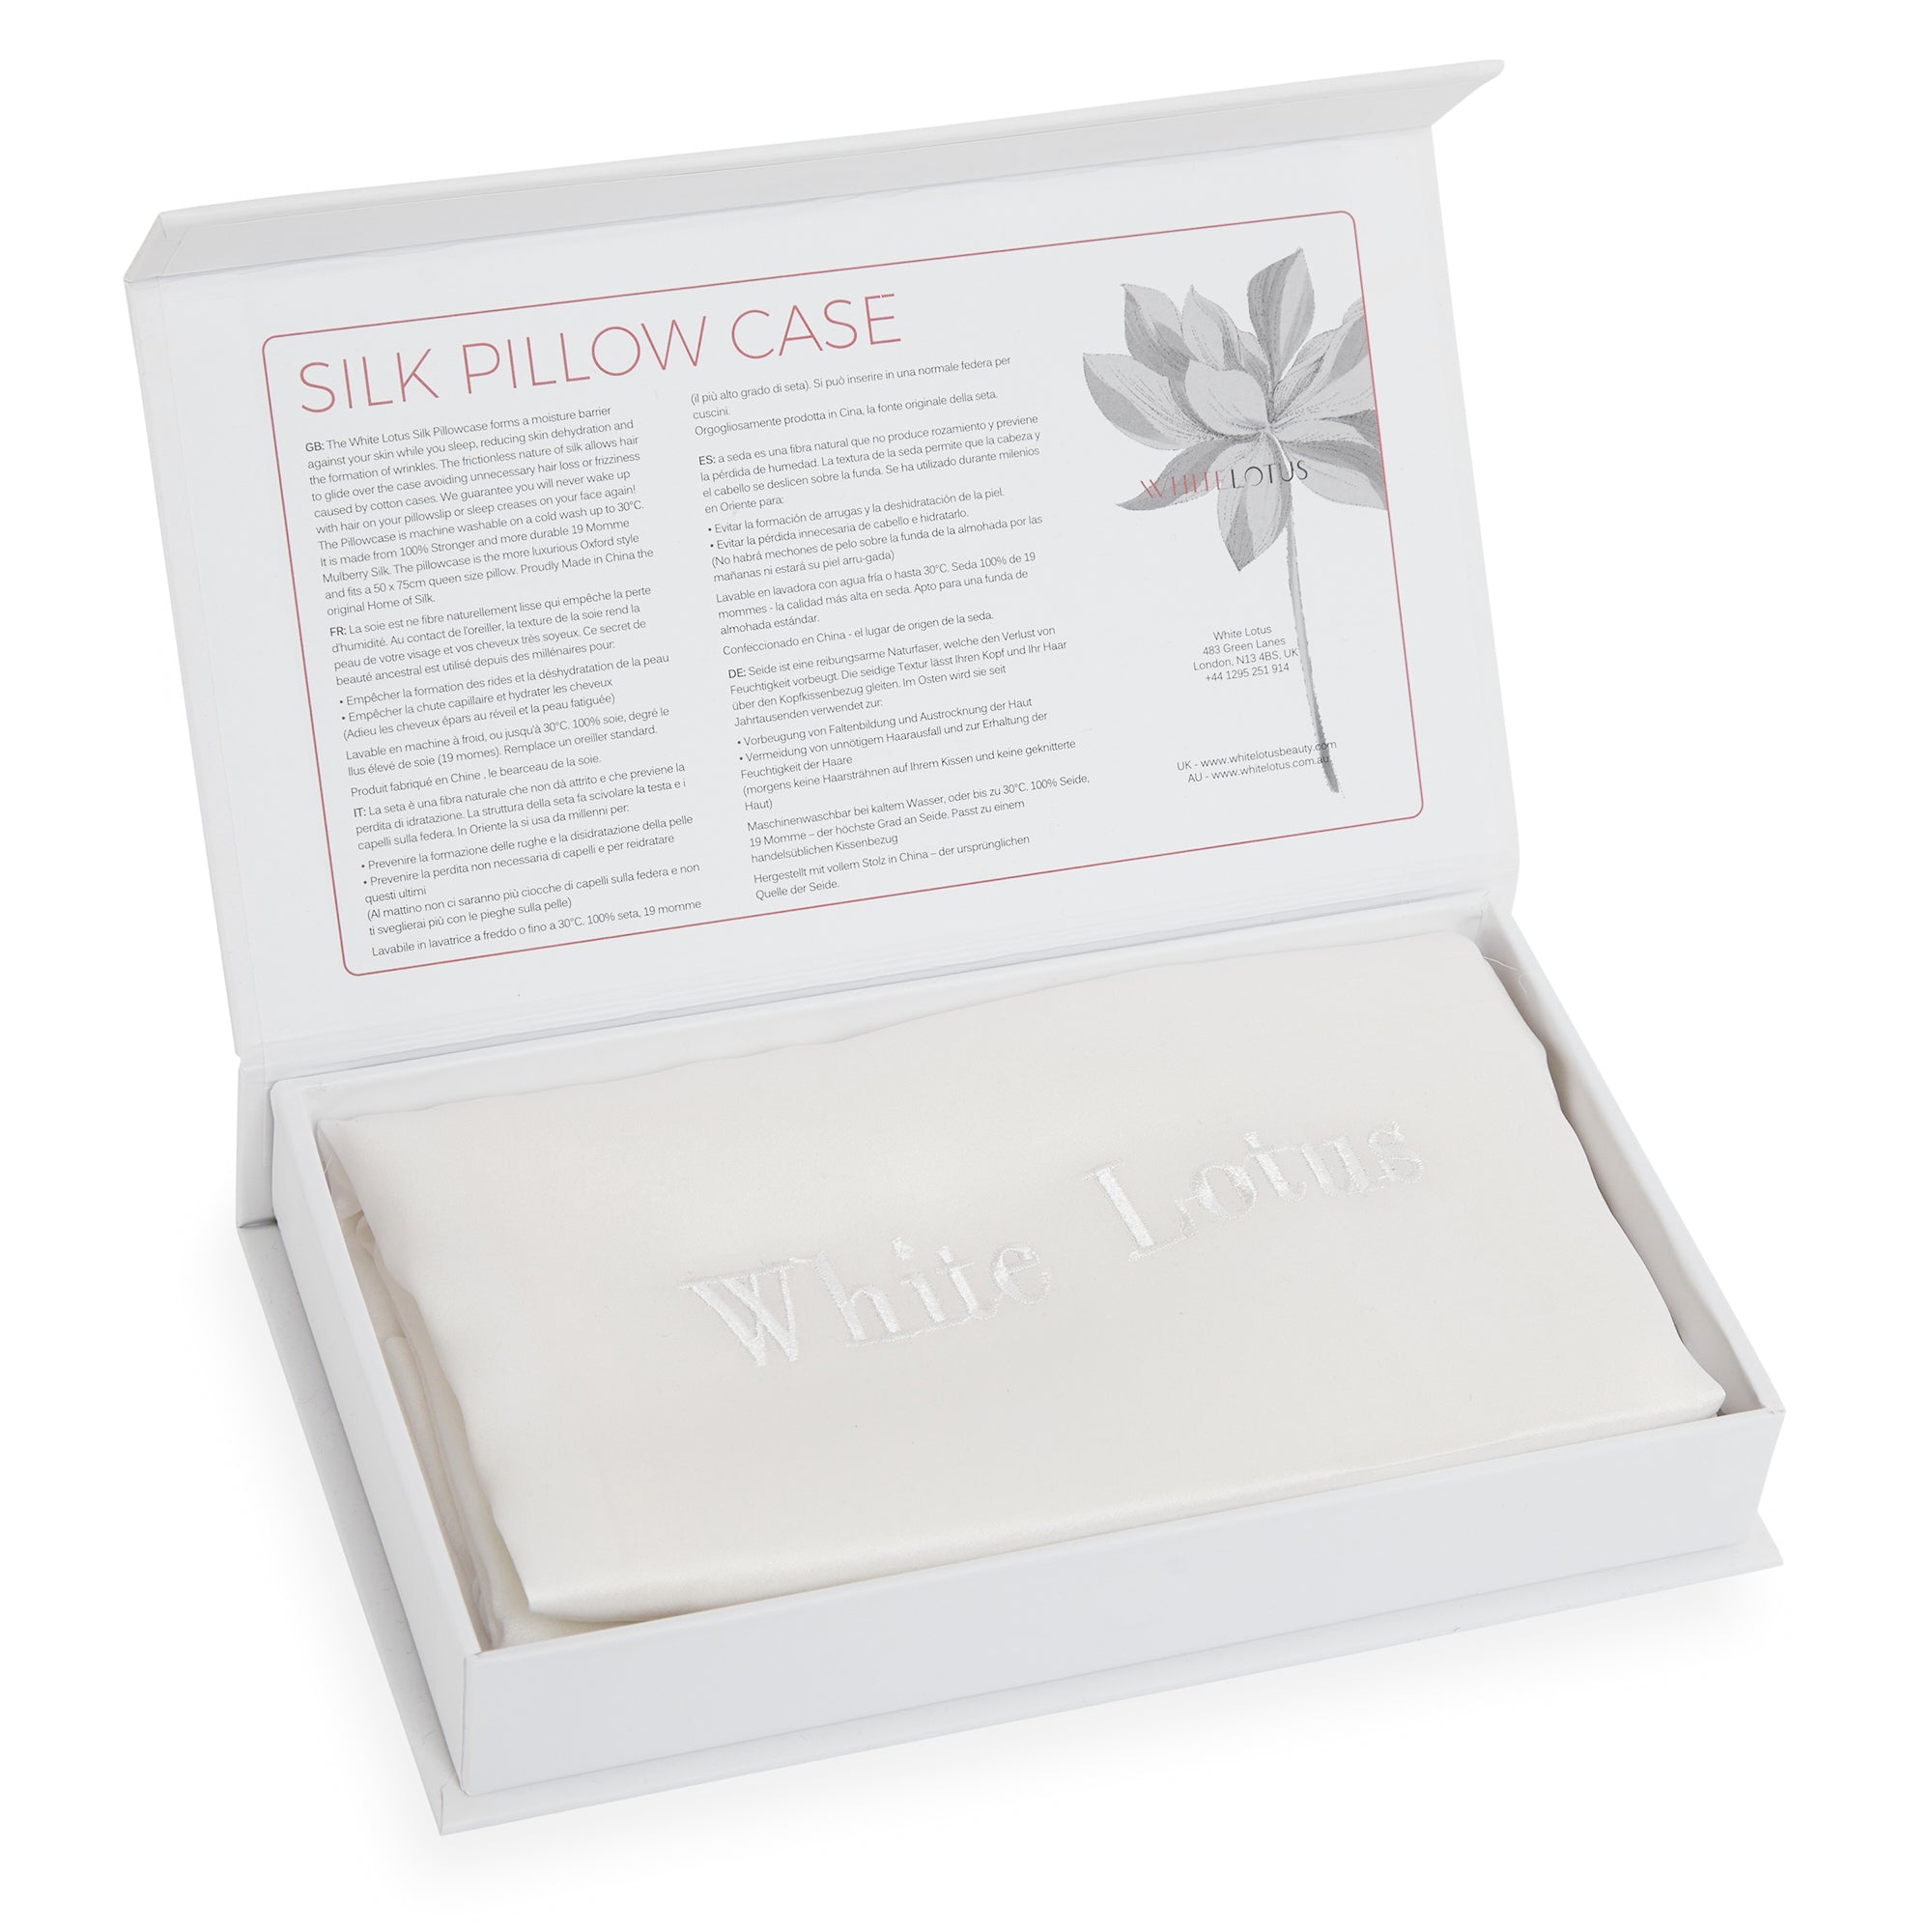 Silk Pillowcase for Hair - Best Silk Pillowcase Hair Growth